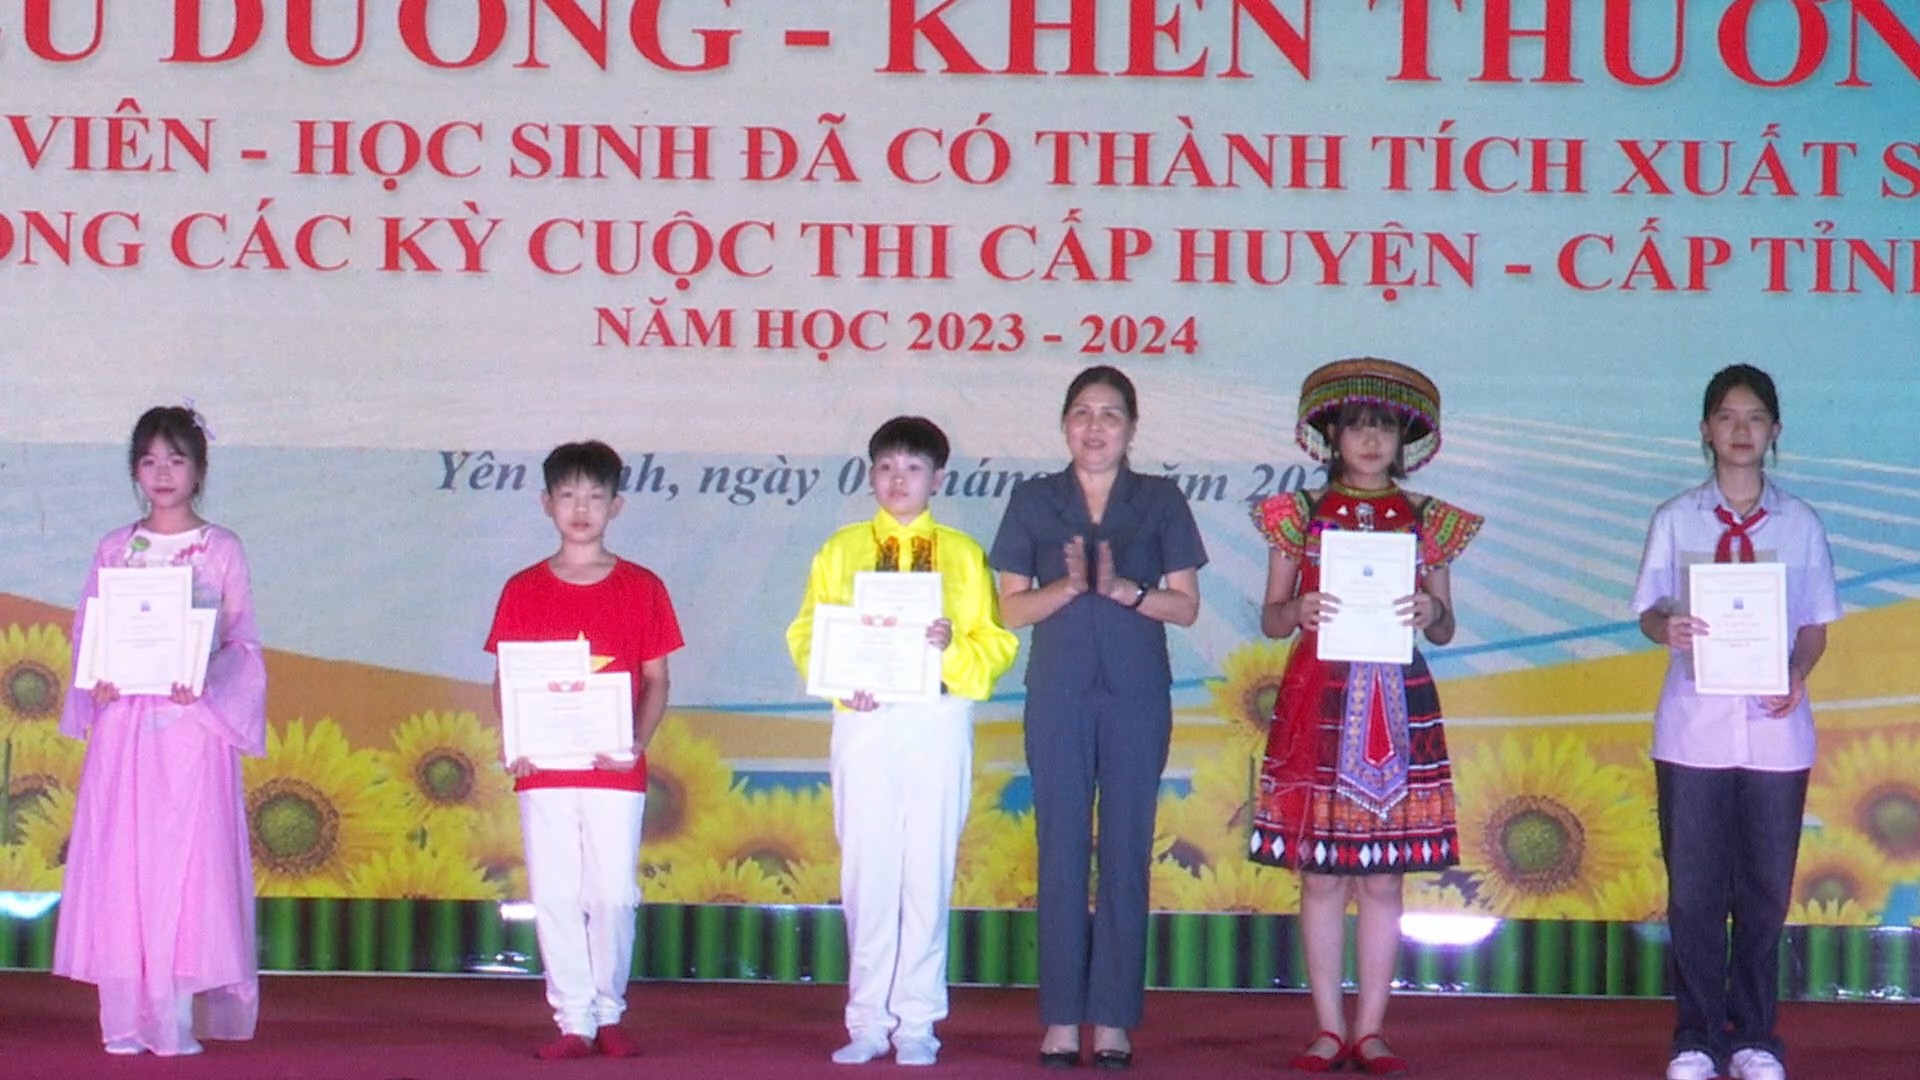 Trường THCS Chu Văn An tổ chức lễ tuyên dương thầy cô và các em học sinh có thành tích xuất sắc năm học 2023 - 2024